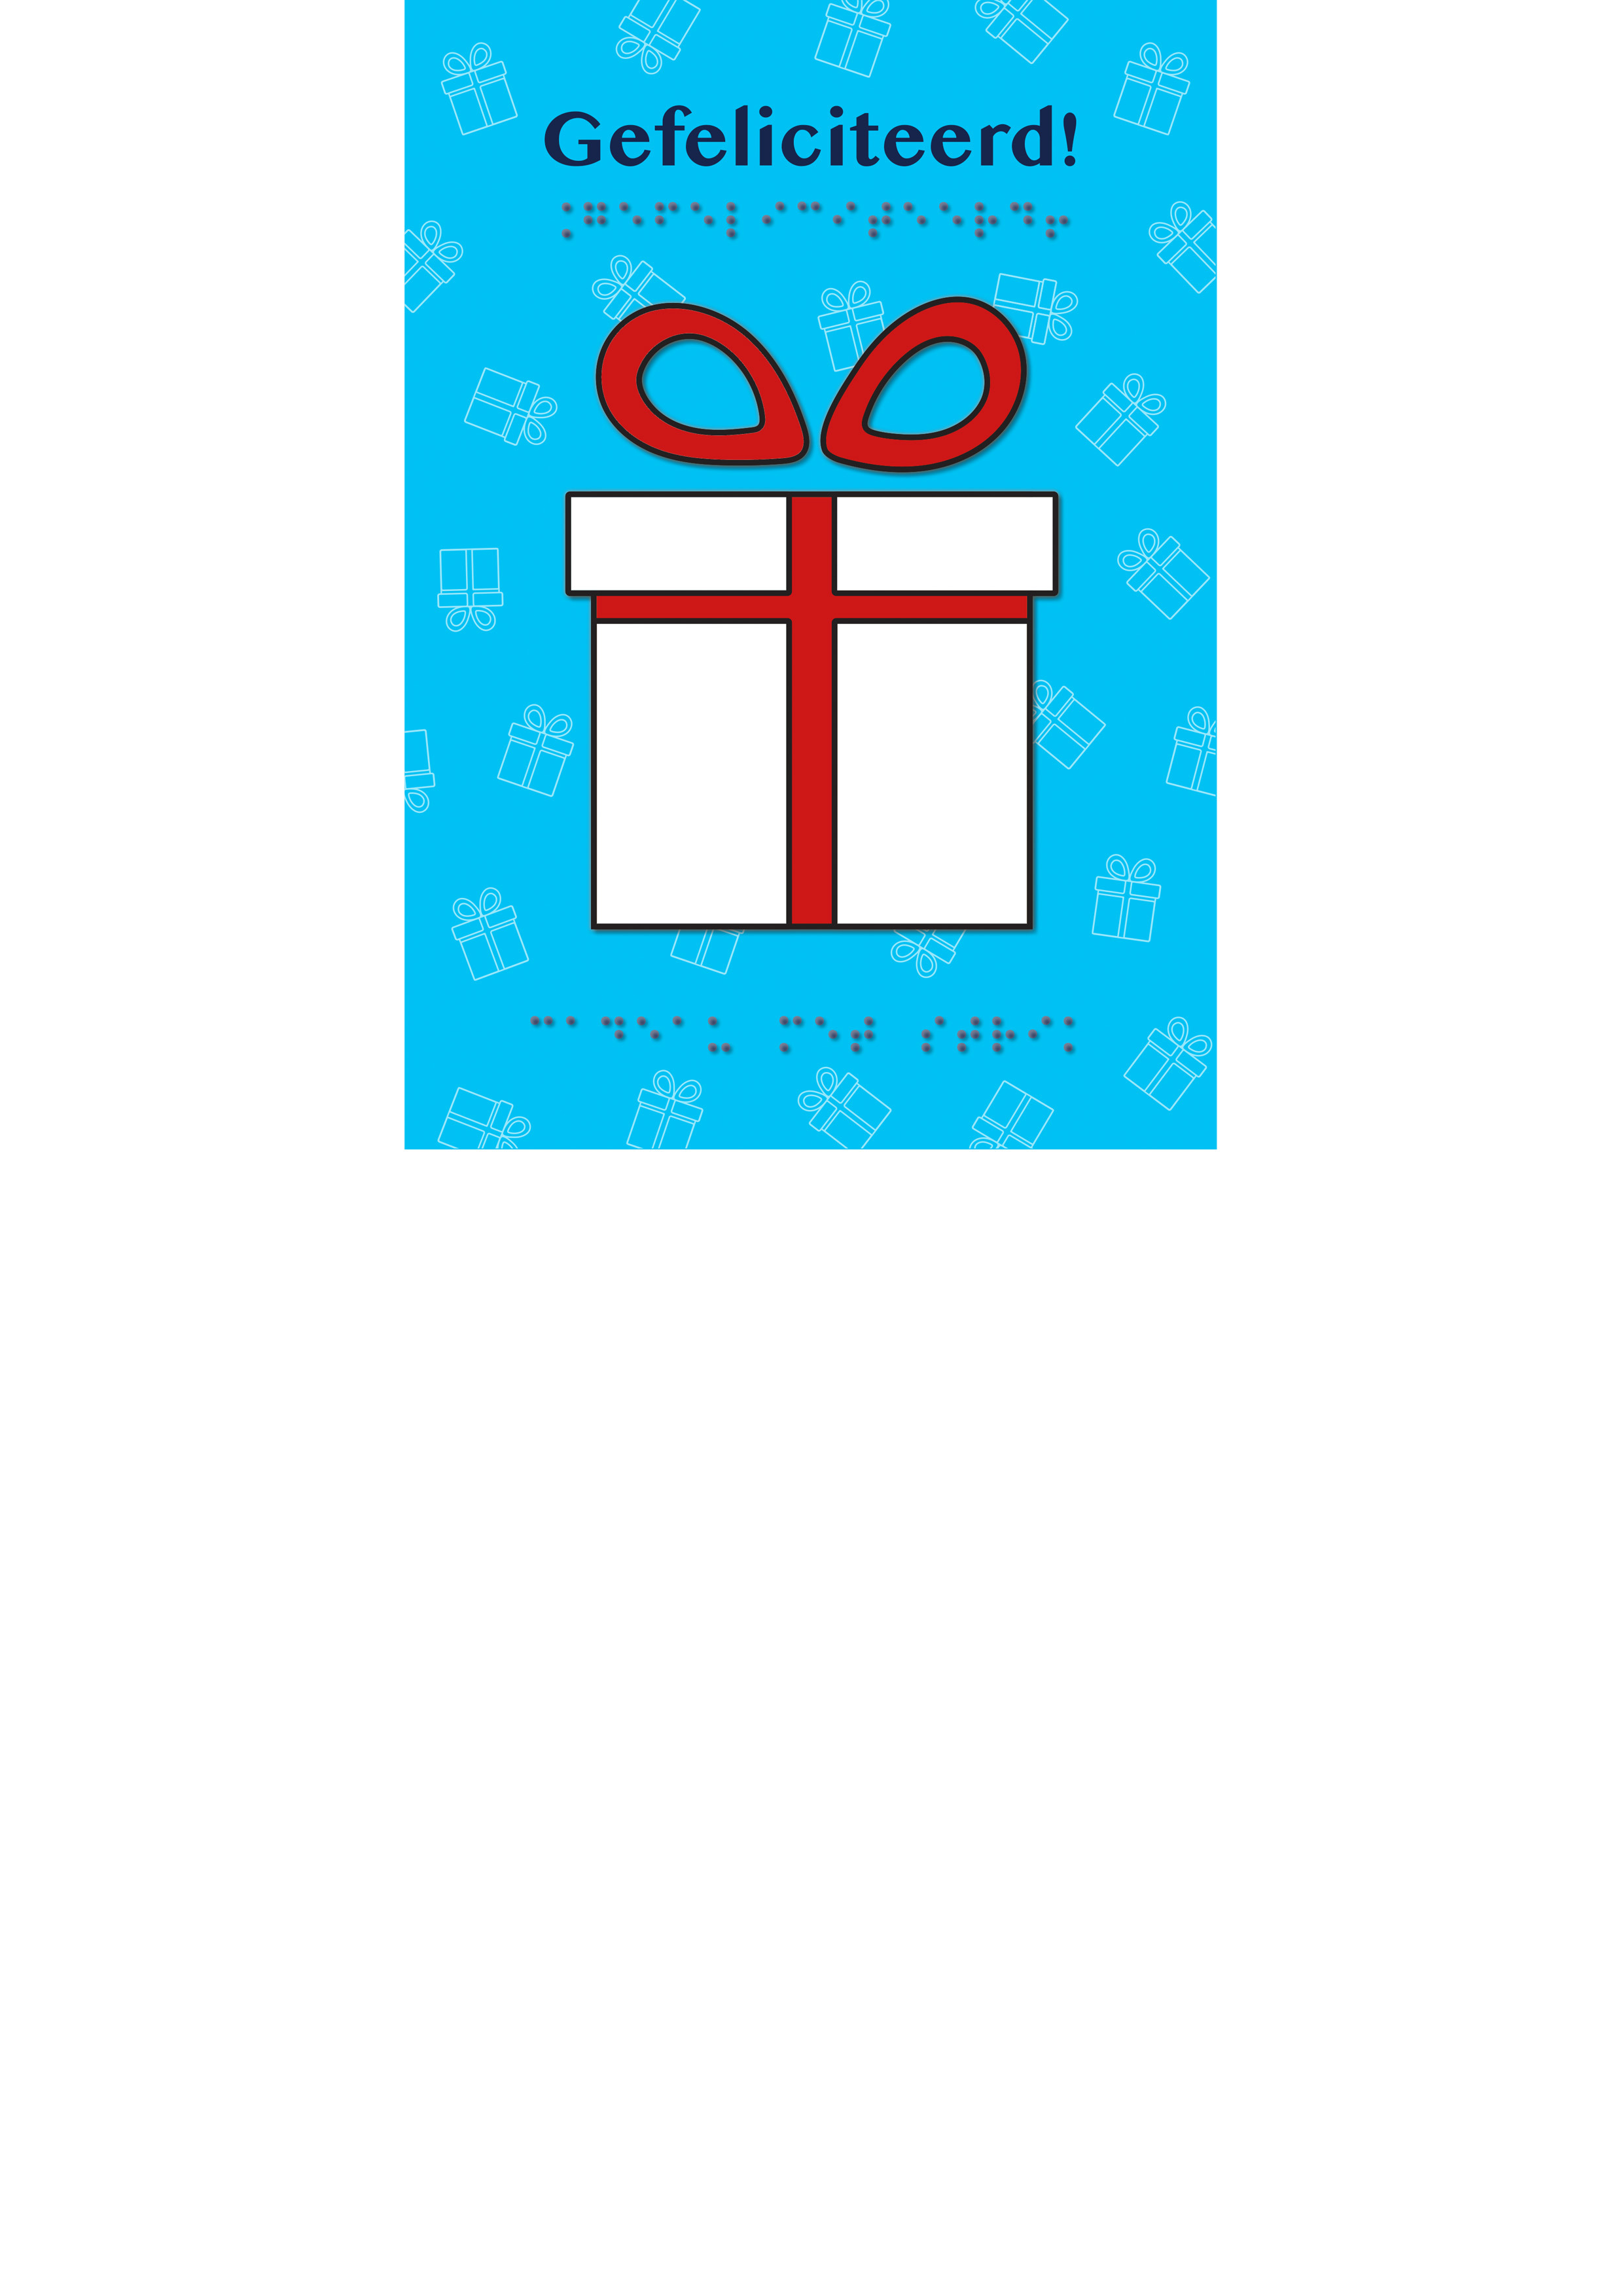 Voelbare kaart met een reliëfafbeelding van een vierkant wit cadeau met een grote rode strik op een blauwe achtergrond. De tekst 'Gefeliciteerd' staat zowel in zwartdruk als in braille op de kaart.